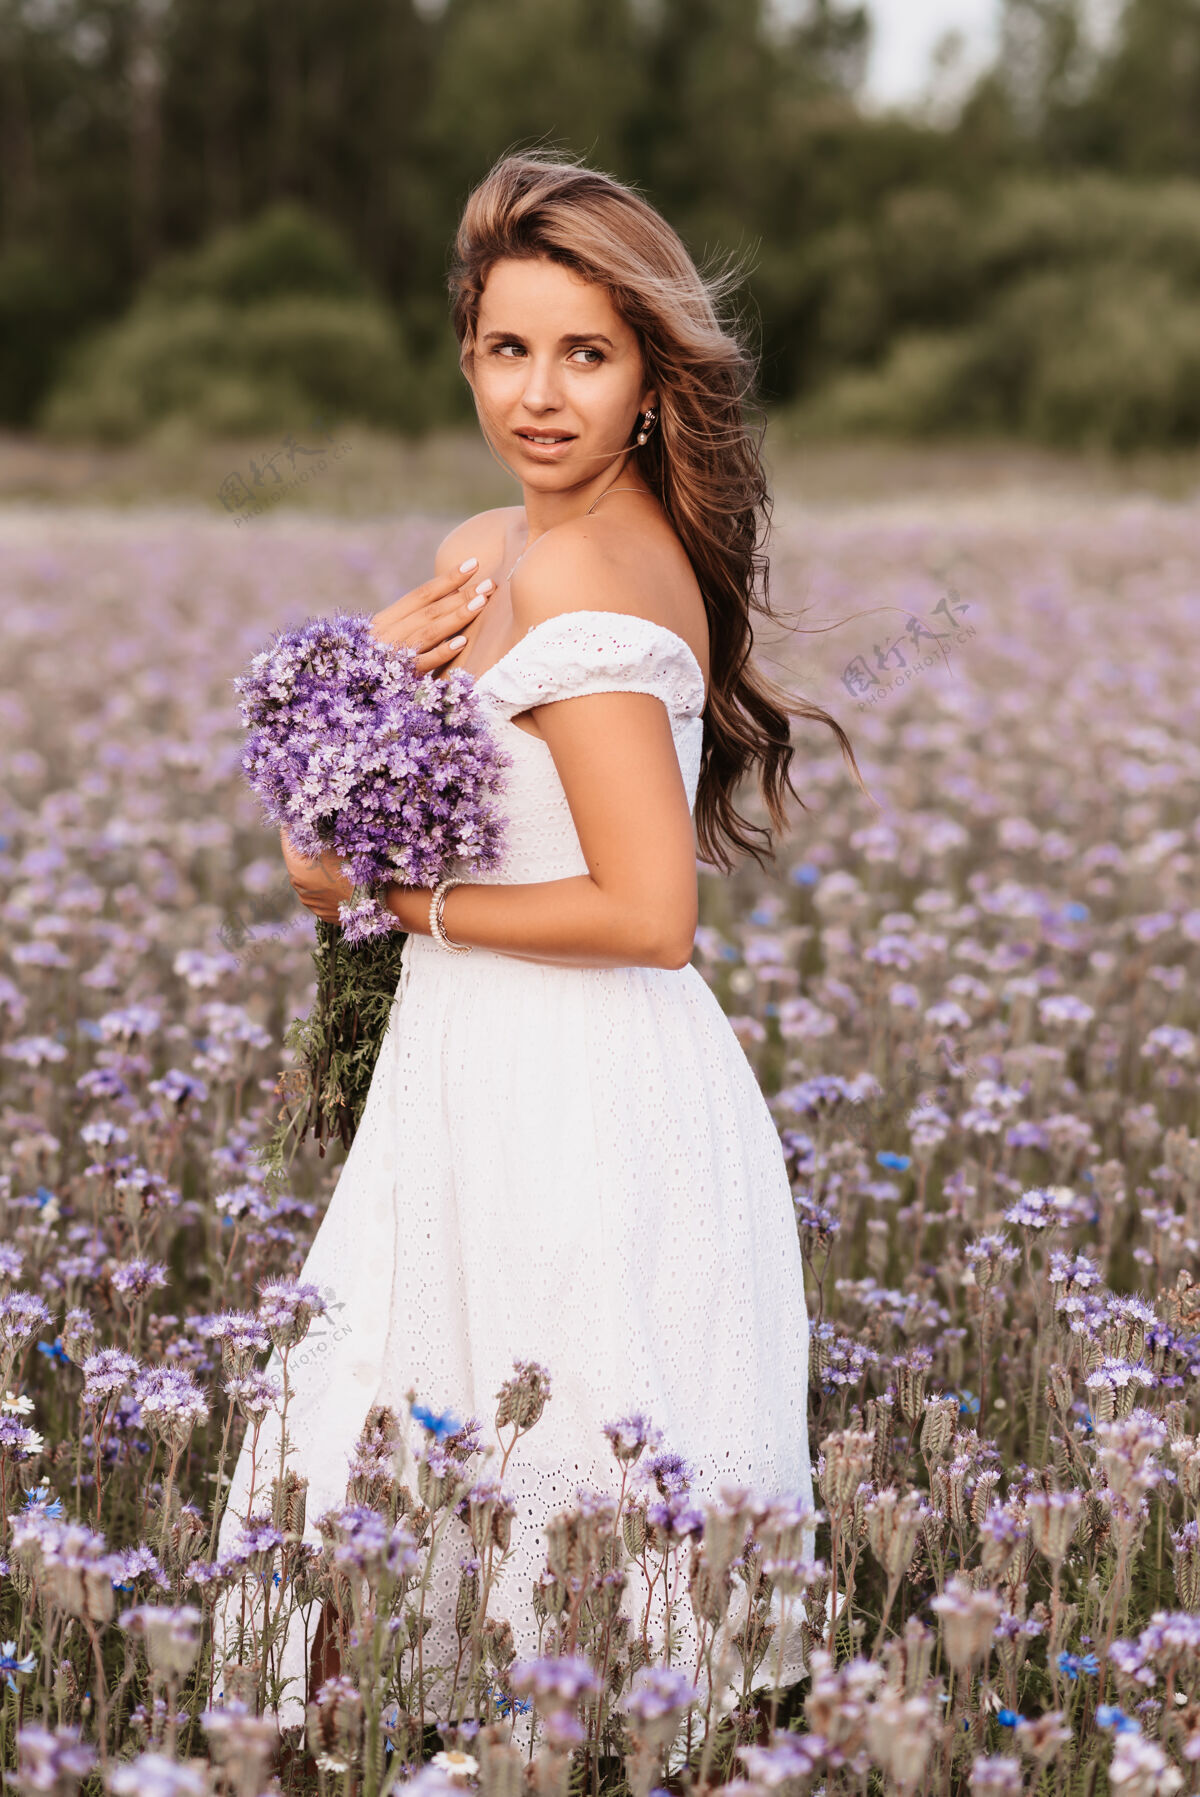 田野夏天 在大自然的田野里 一个穿着白裙子 开着一束紫色花朵的女孩户外生活方式年轻